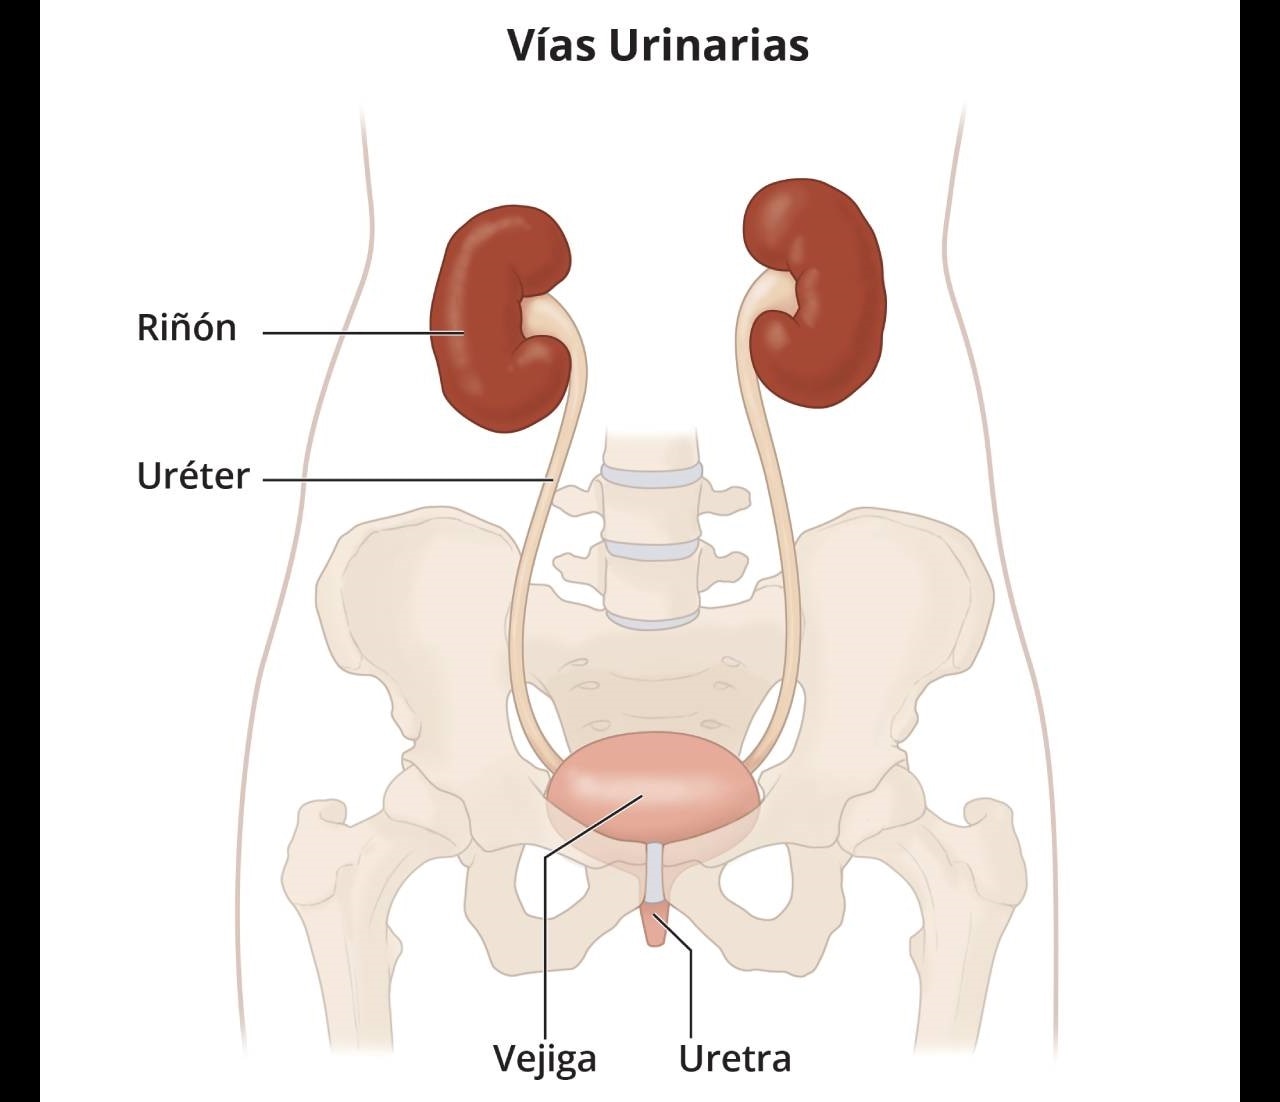 Las vías urinarias que incluyen los riñones, los uréteres, la vejiga y la uretra.